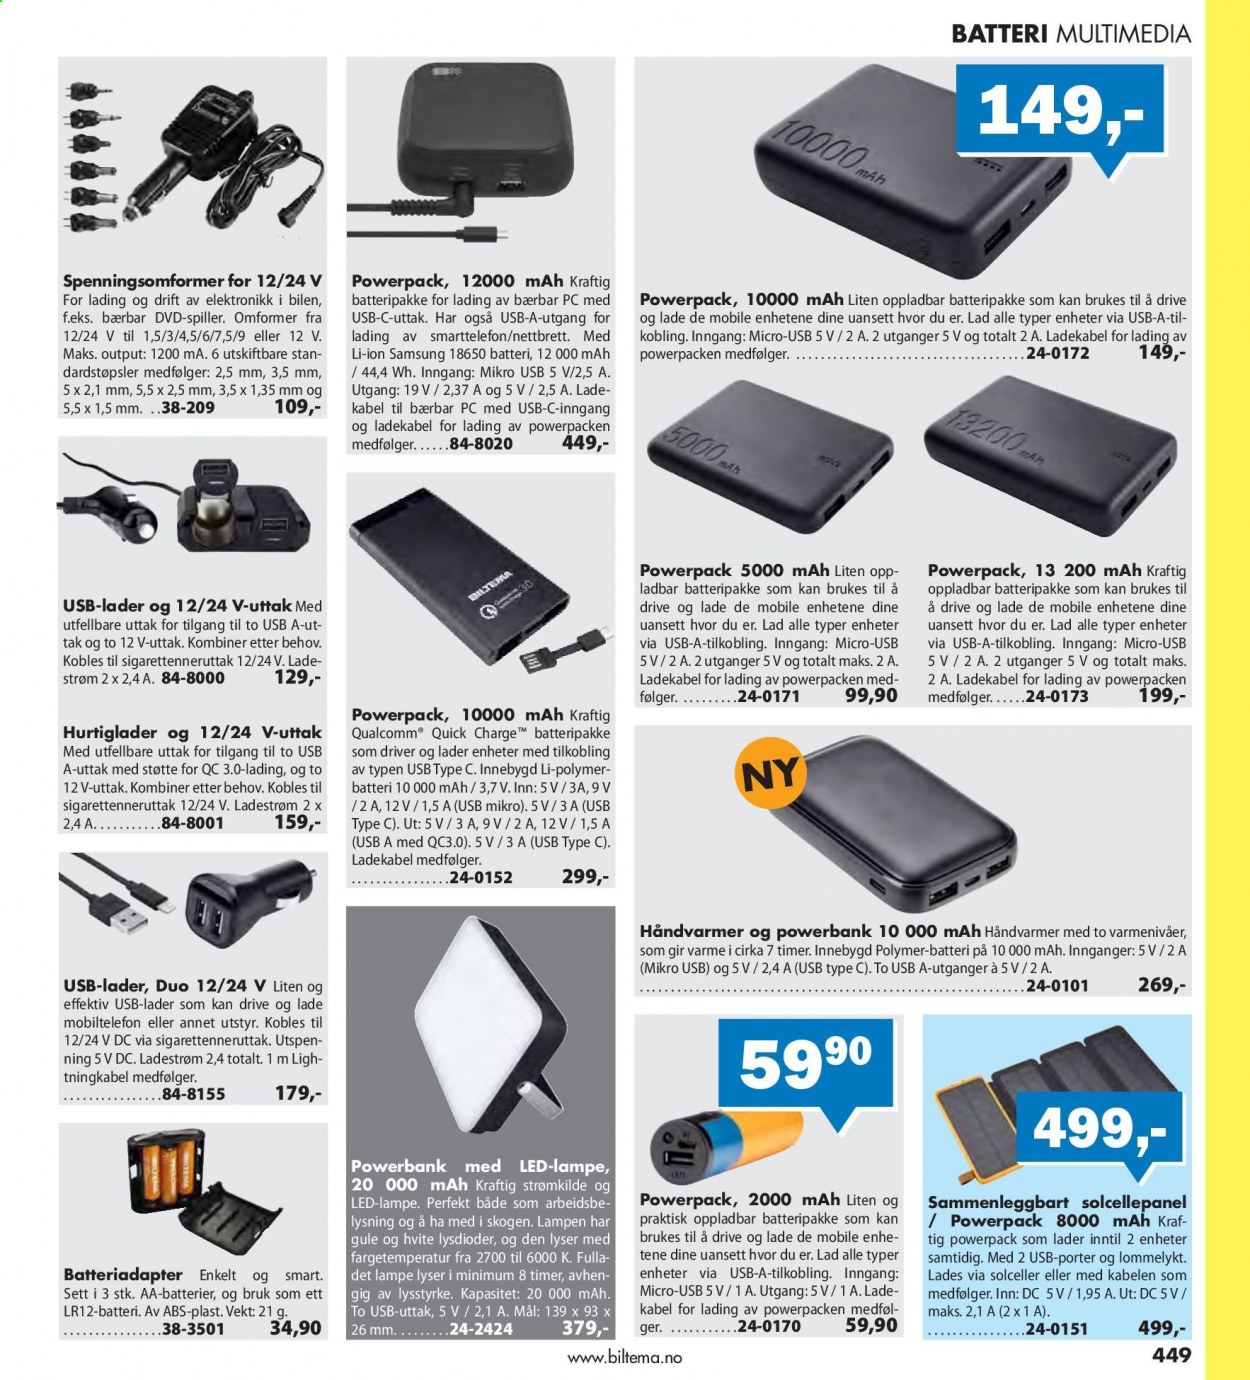 thumbnail - Kundeavis Biltema - Produkter fra tilbudsaviser - batteri, powerbank, Samsung, lampe. Side 449.